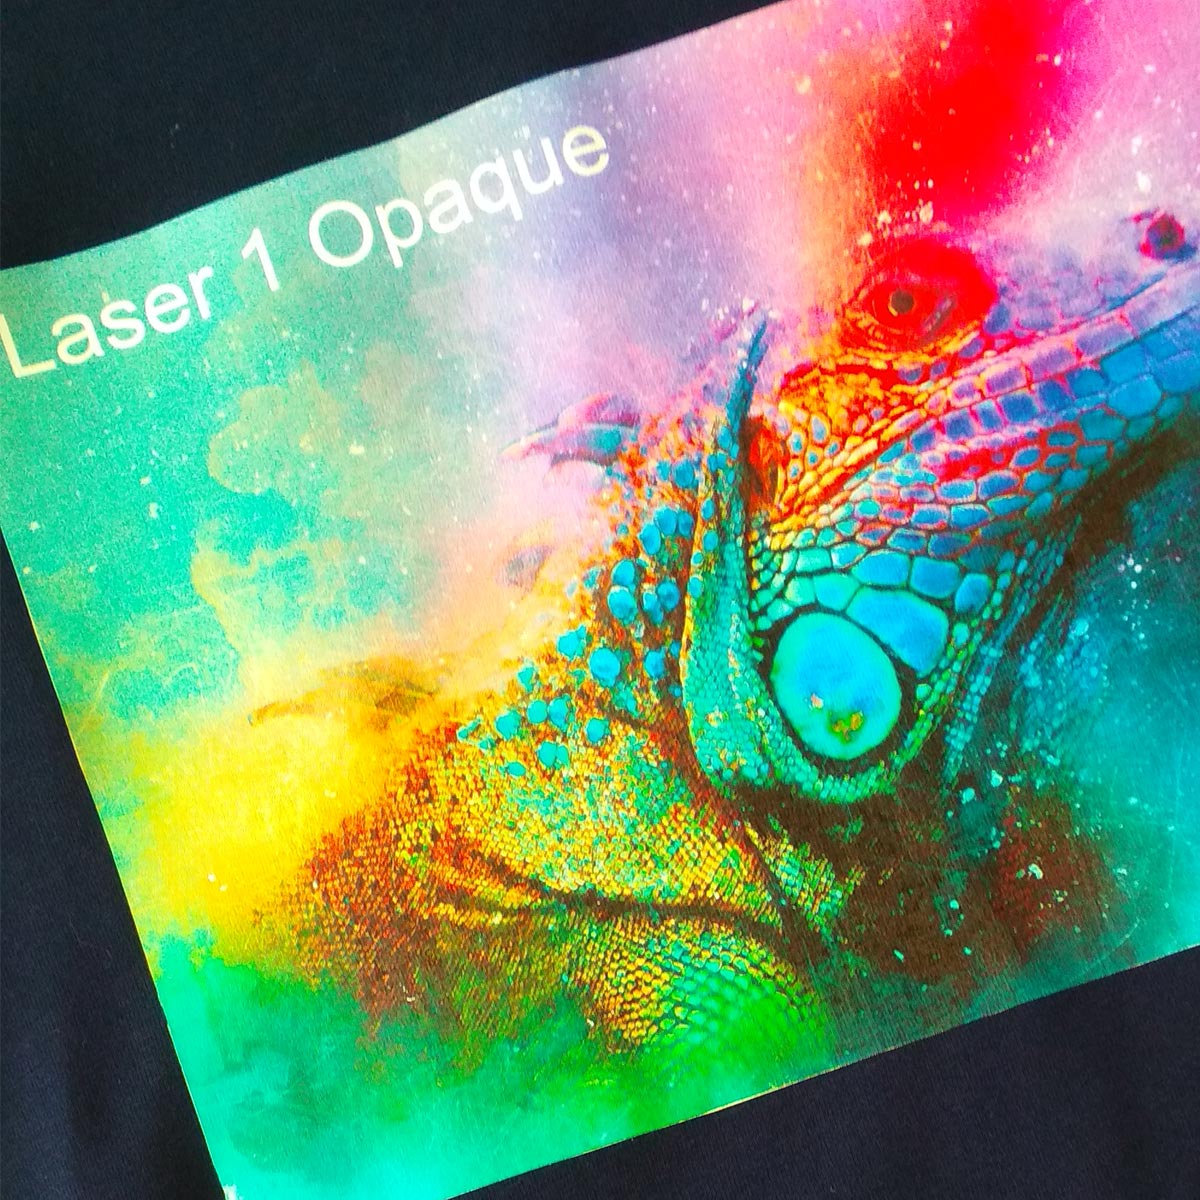 Laser 1 Opaque - papier transferowy do drukarek laserowych na ciemne i kolorowe tkaniny - 10 arkuszy